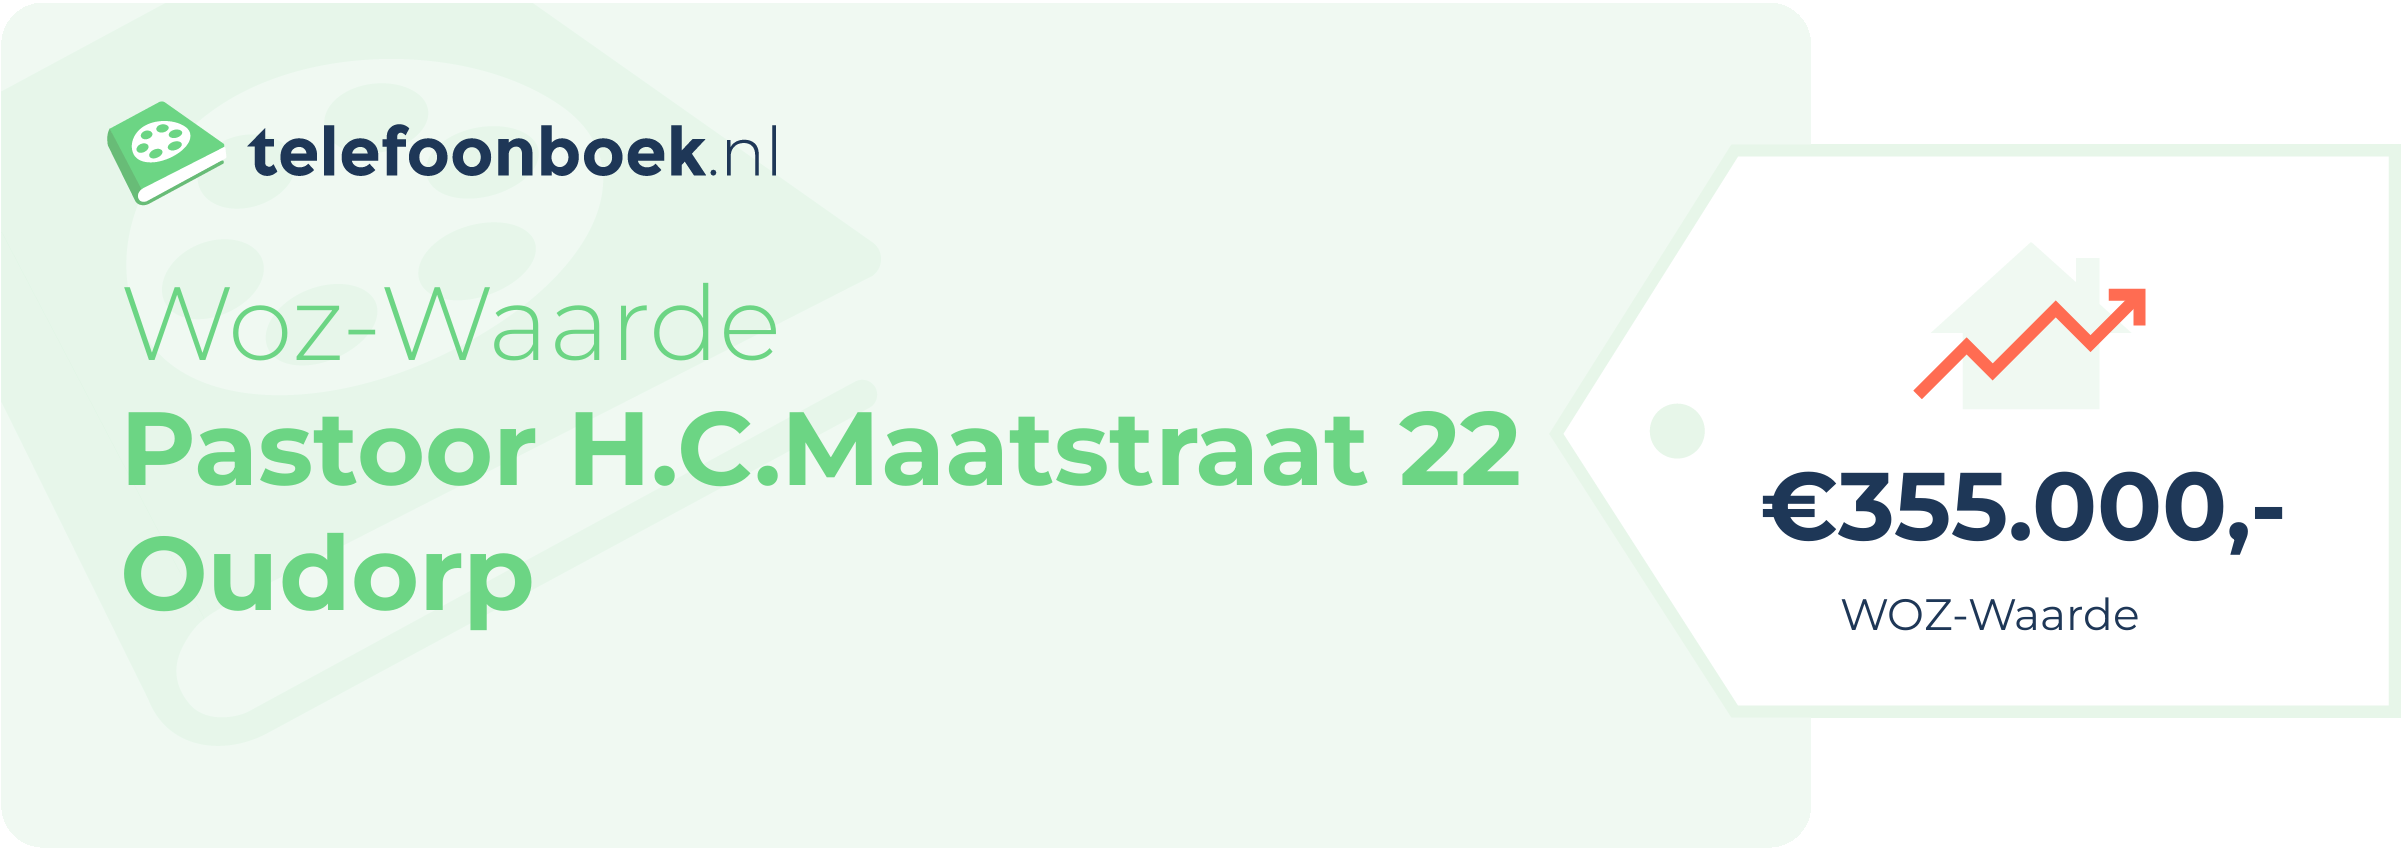 WOZ-waarde Pastoor H.C.Maatstraat 22 Oudorp